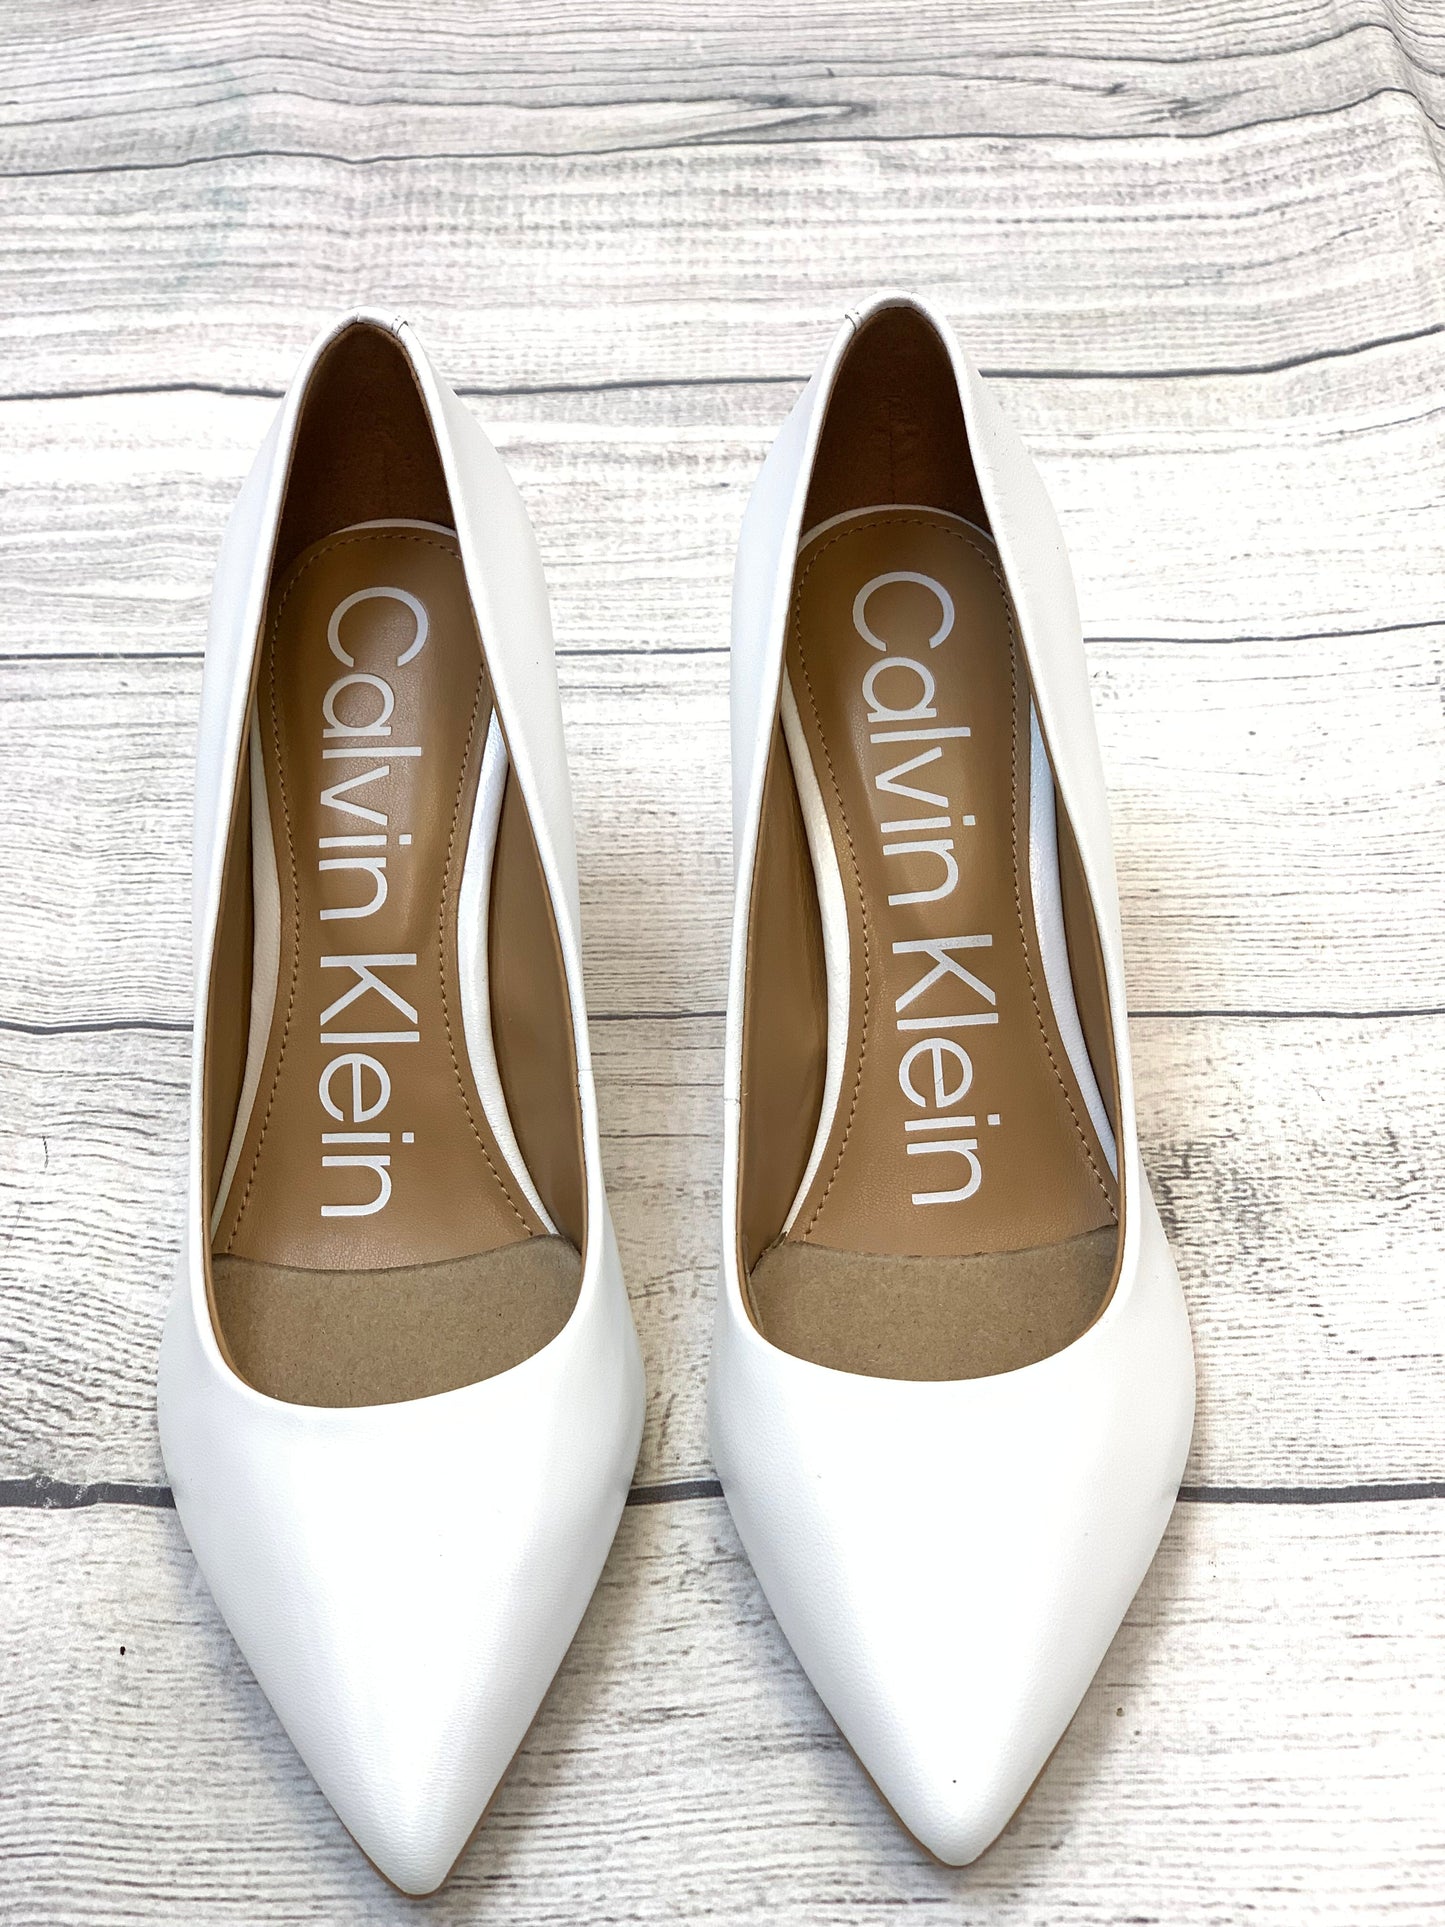 White Shoes Heels Stiletto Calvin Klein, Size 7.5